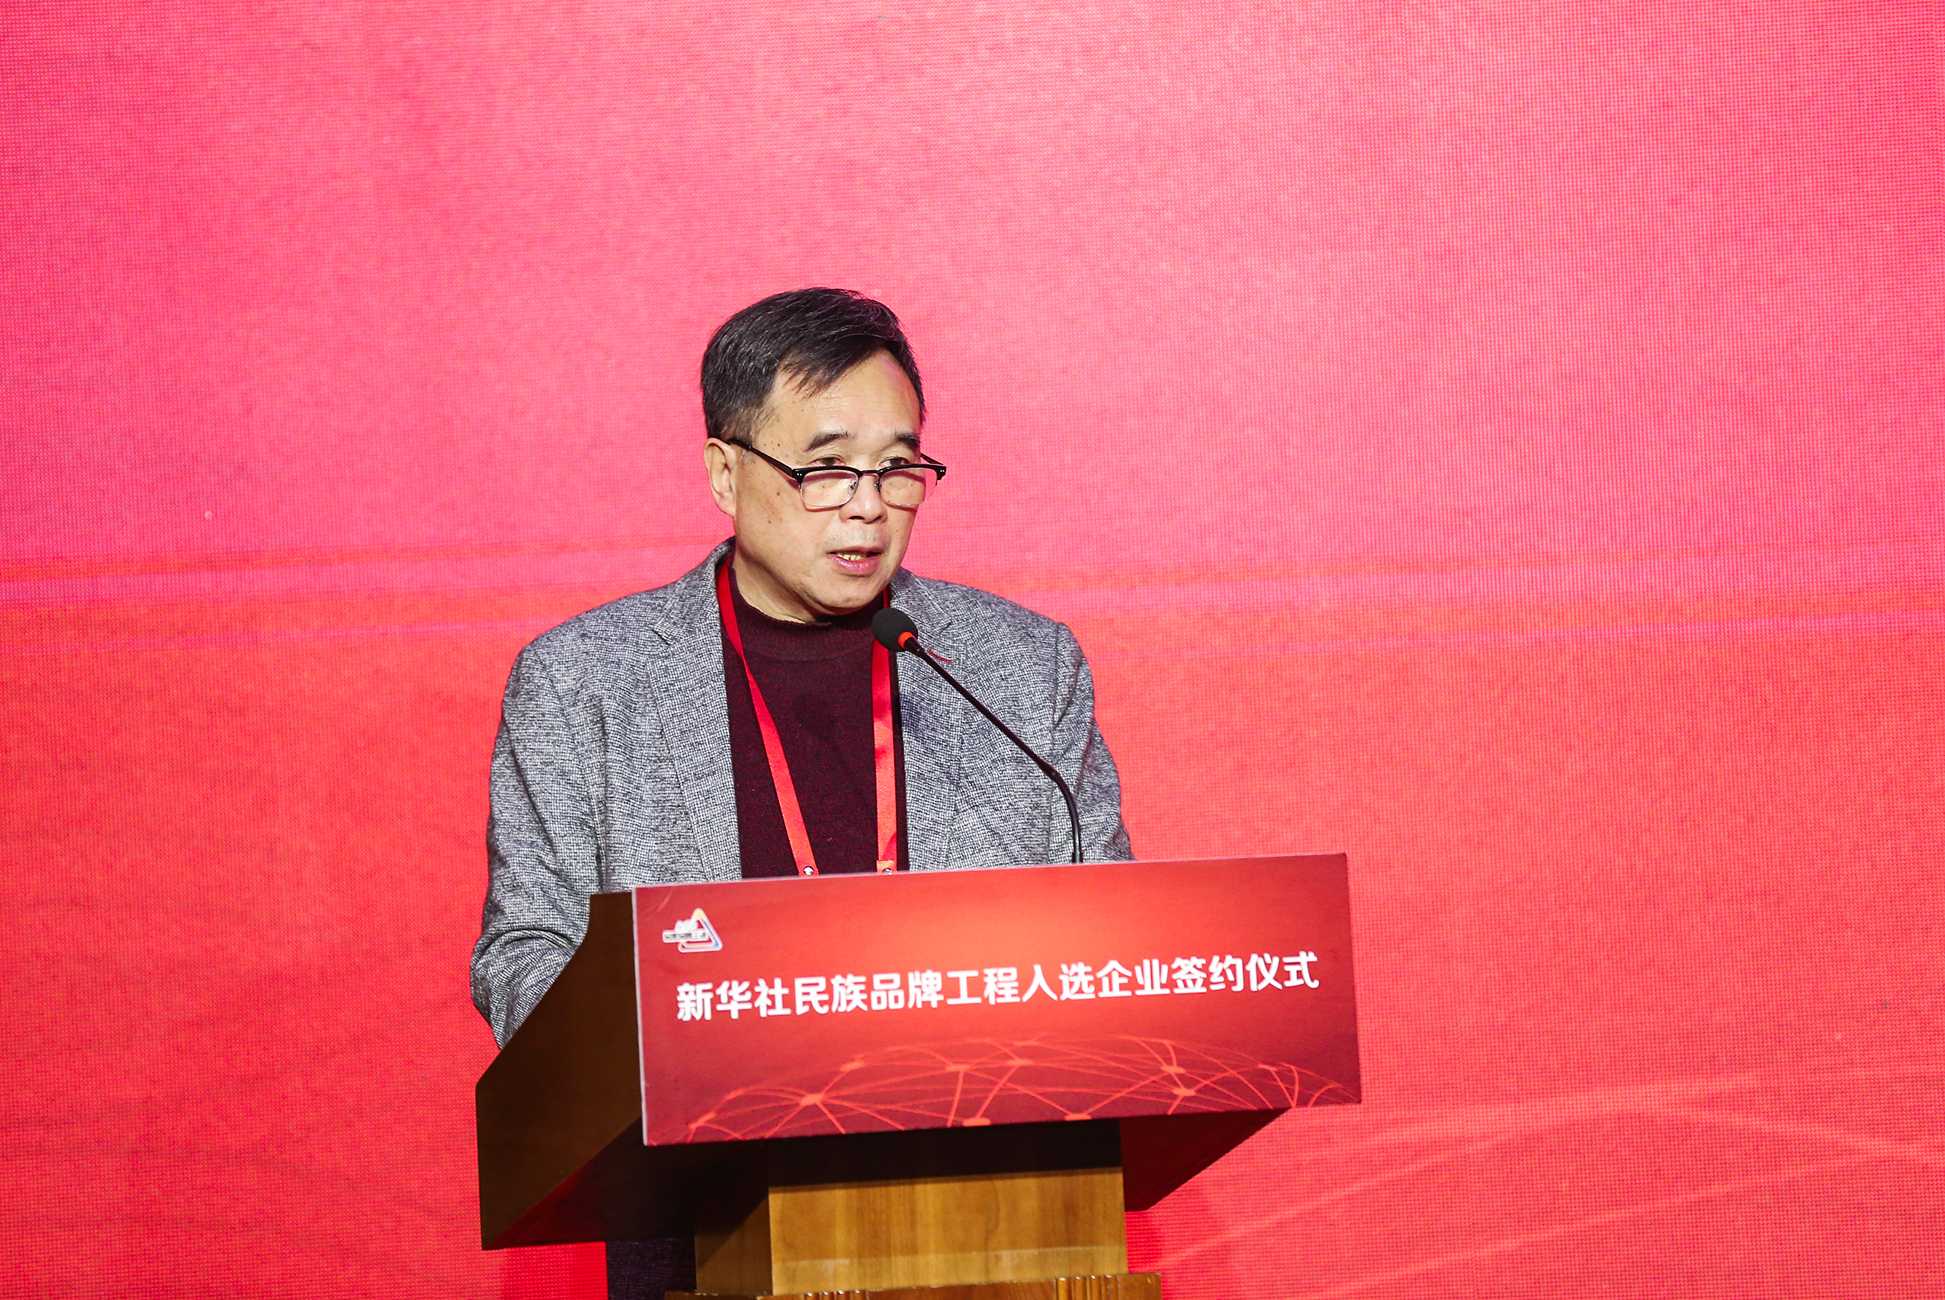 中国传媒大学广告学院创院院长、中国广告博物馆馆长、国家广告研究院常务副院长黄升民致辞。